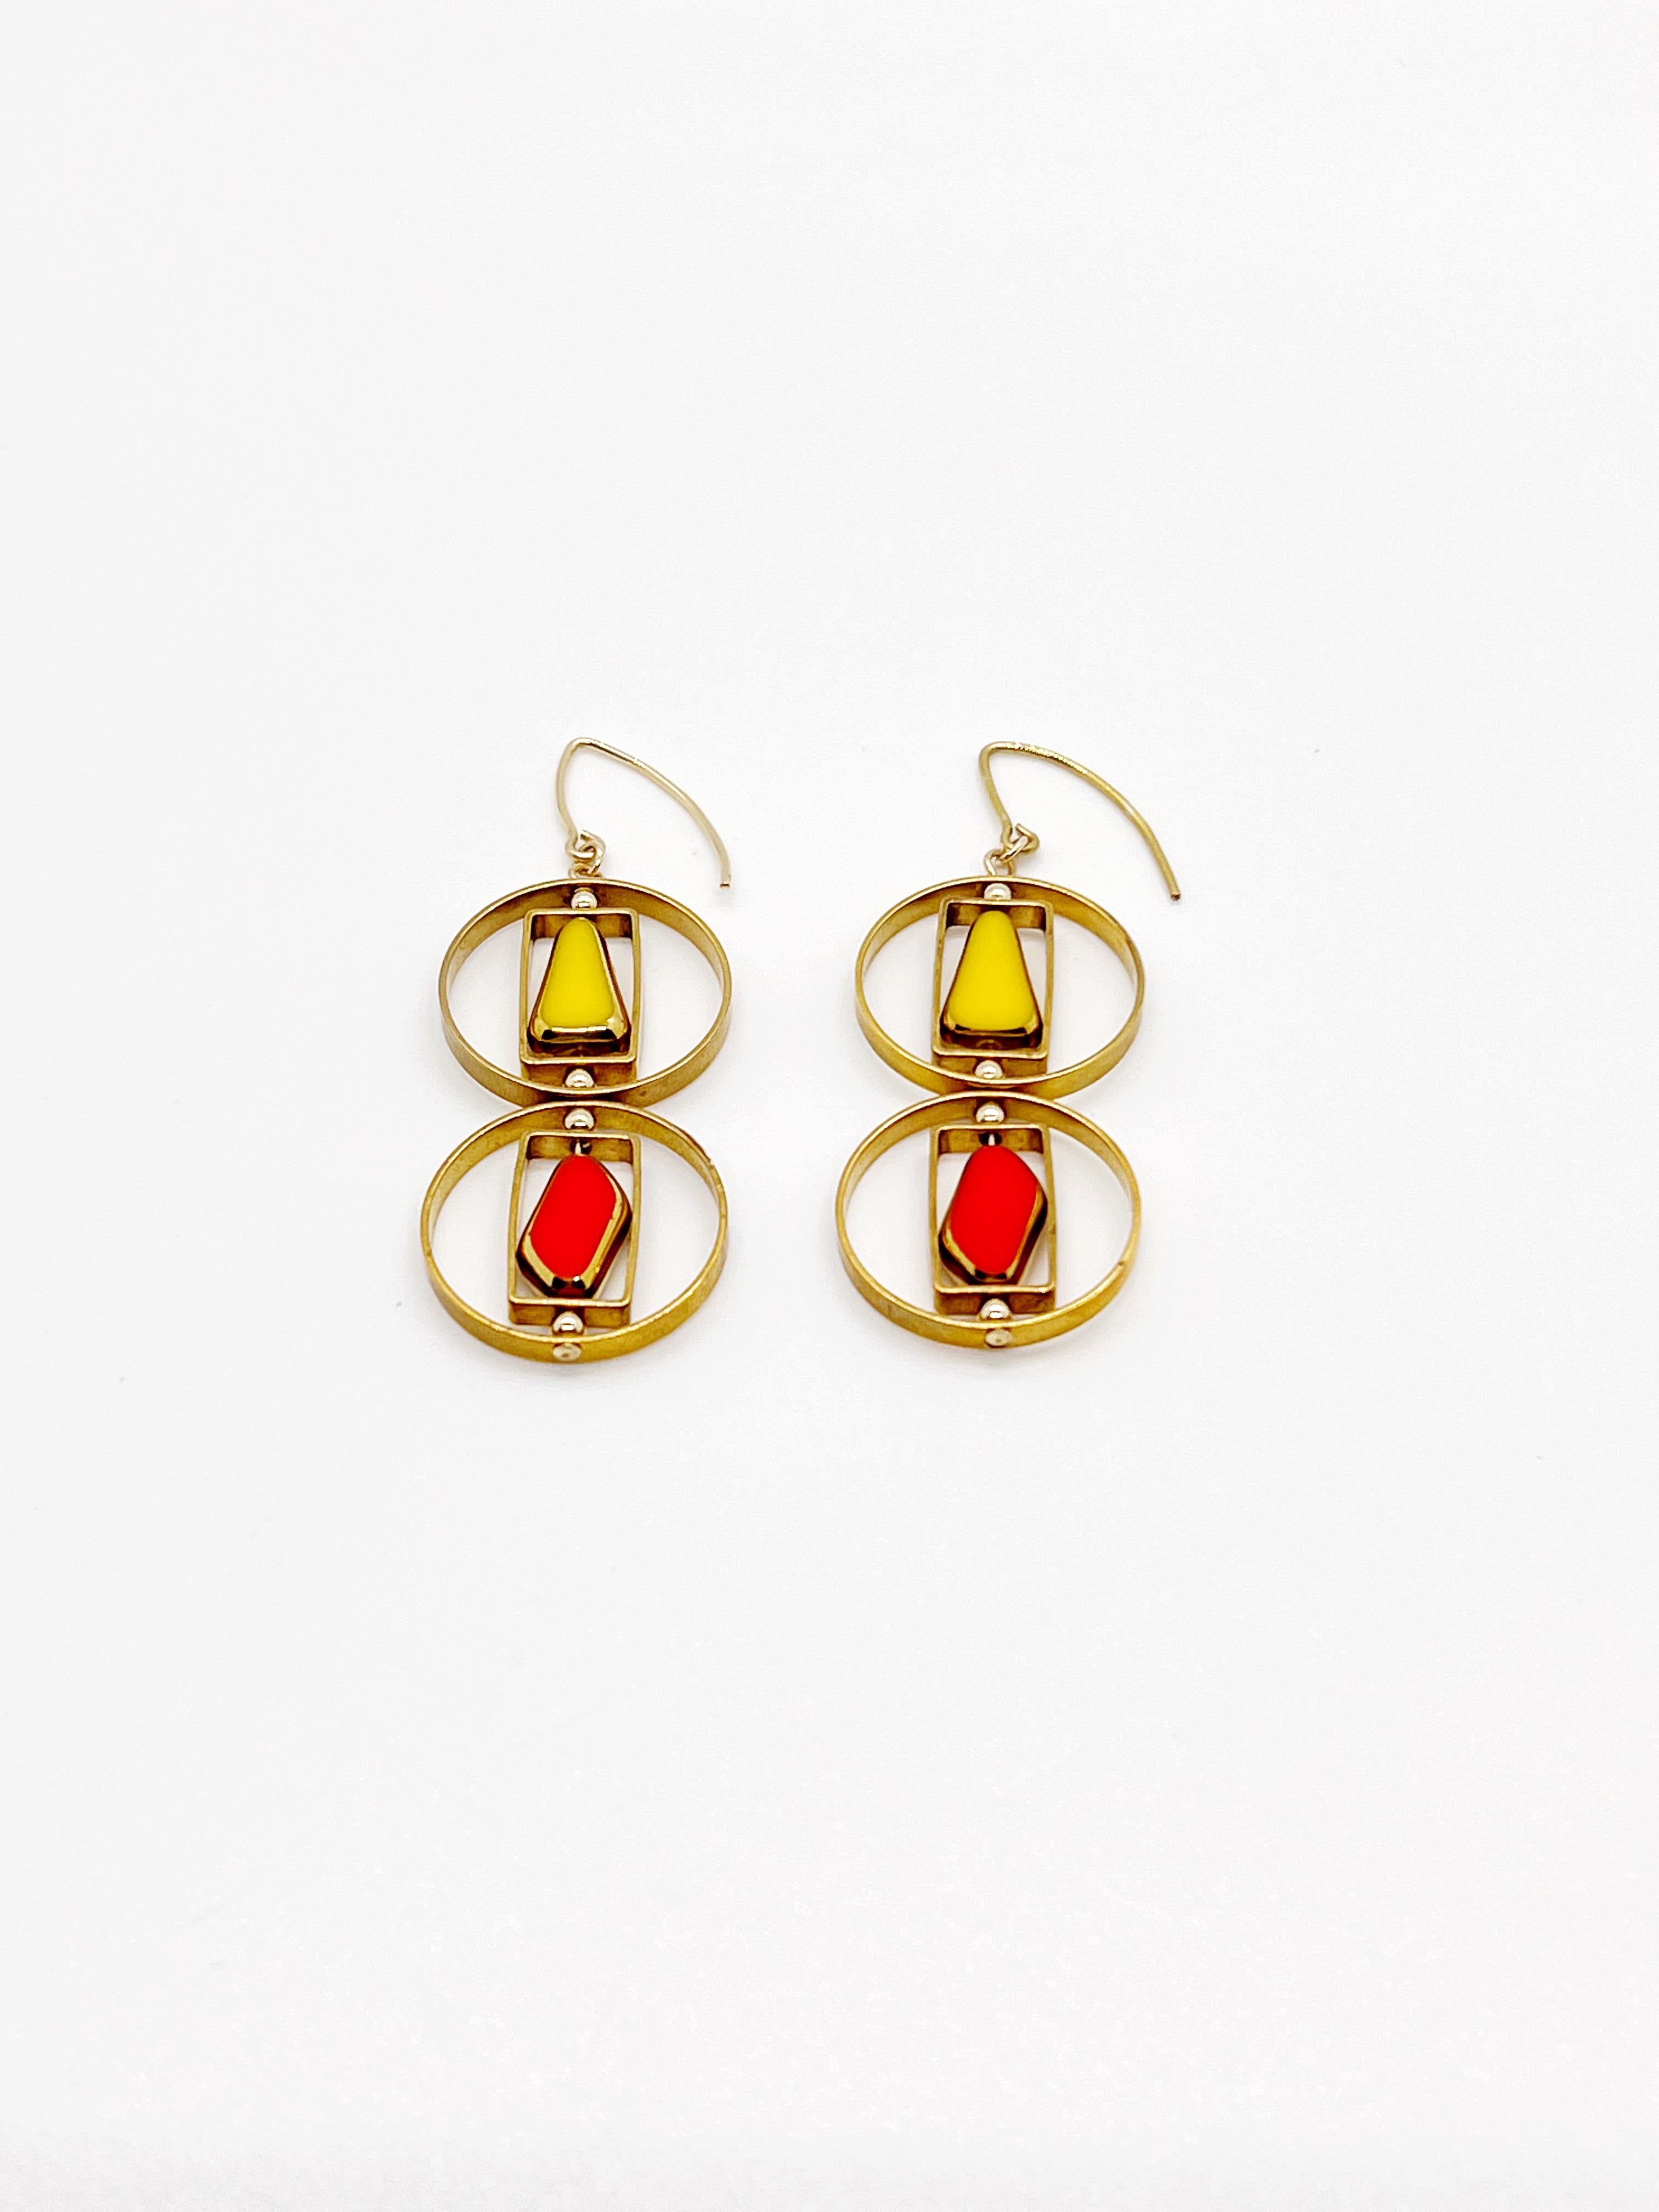 Les boucles d'oreilles sont composées de perles de verre allemandes vintage jaune-orange-rouge encadrées d'or 24K. Les perles ont été pressées à la main dans les années 1920-1960. Il n'y a pas deux perles identiques. Ces perles ne sont plus